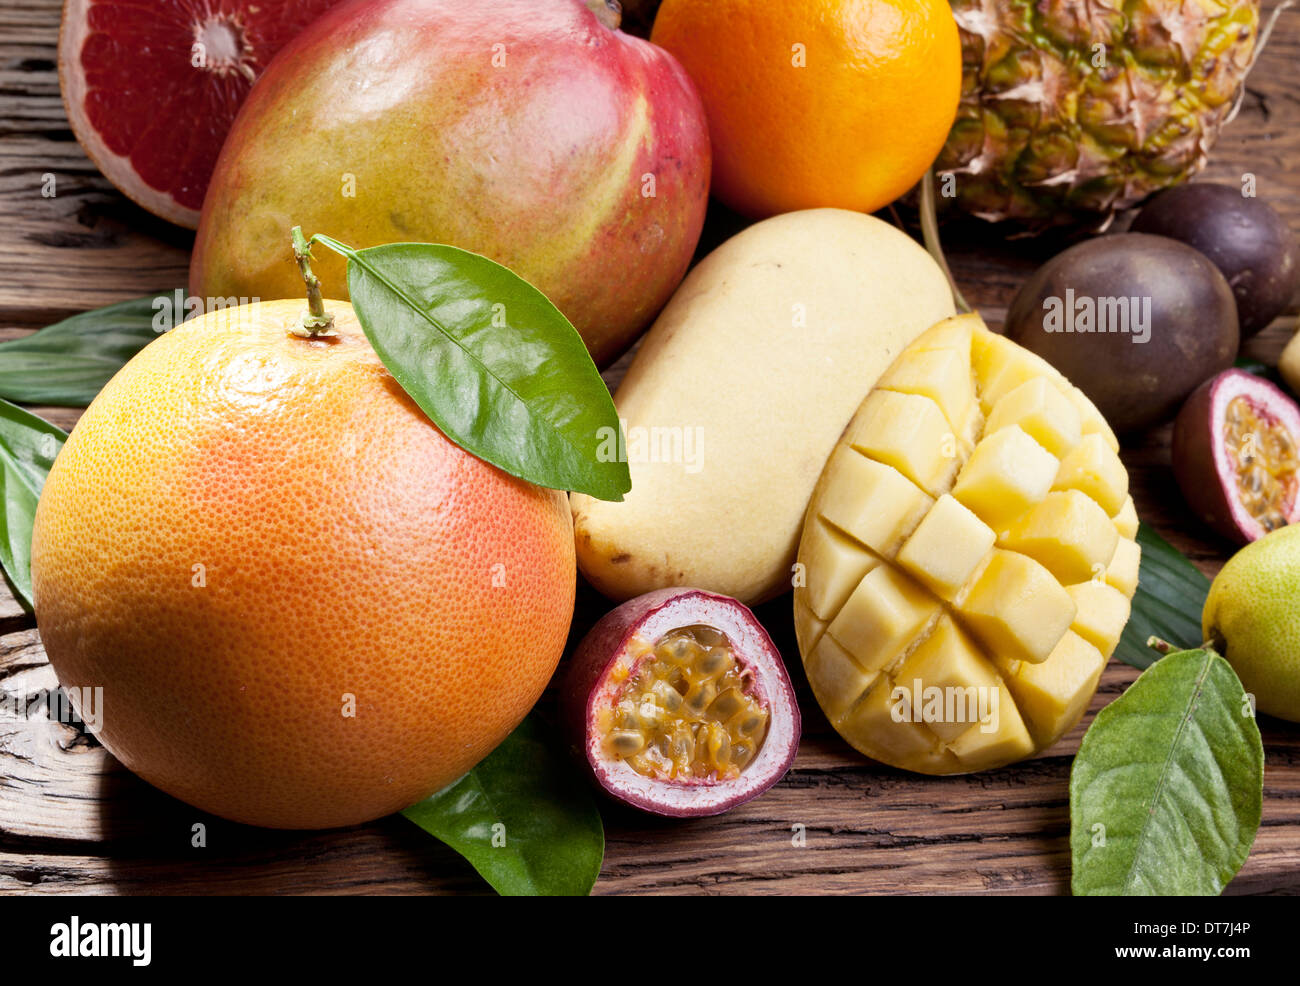 Exotische Früchte auf einem Holztisch mit dunkelgrünem Laub auf dem Hintergrund. Stockfoto